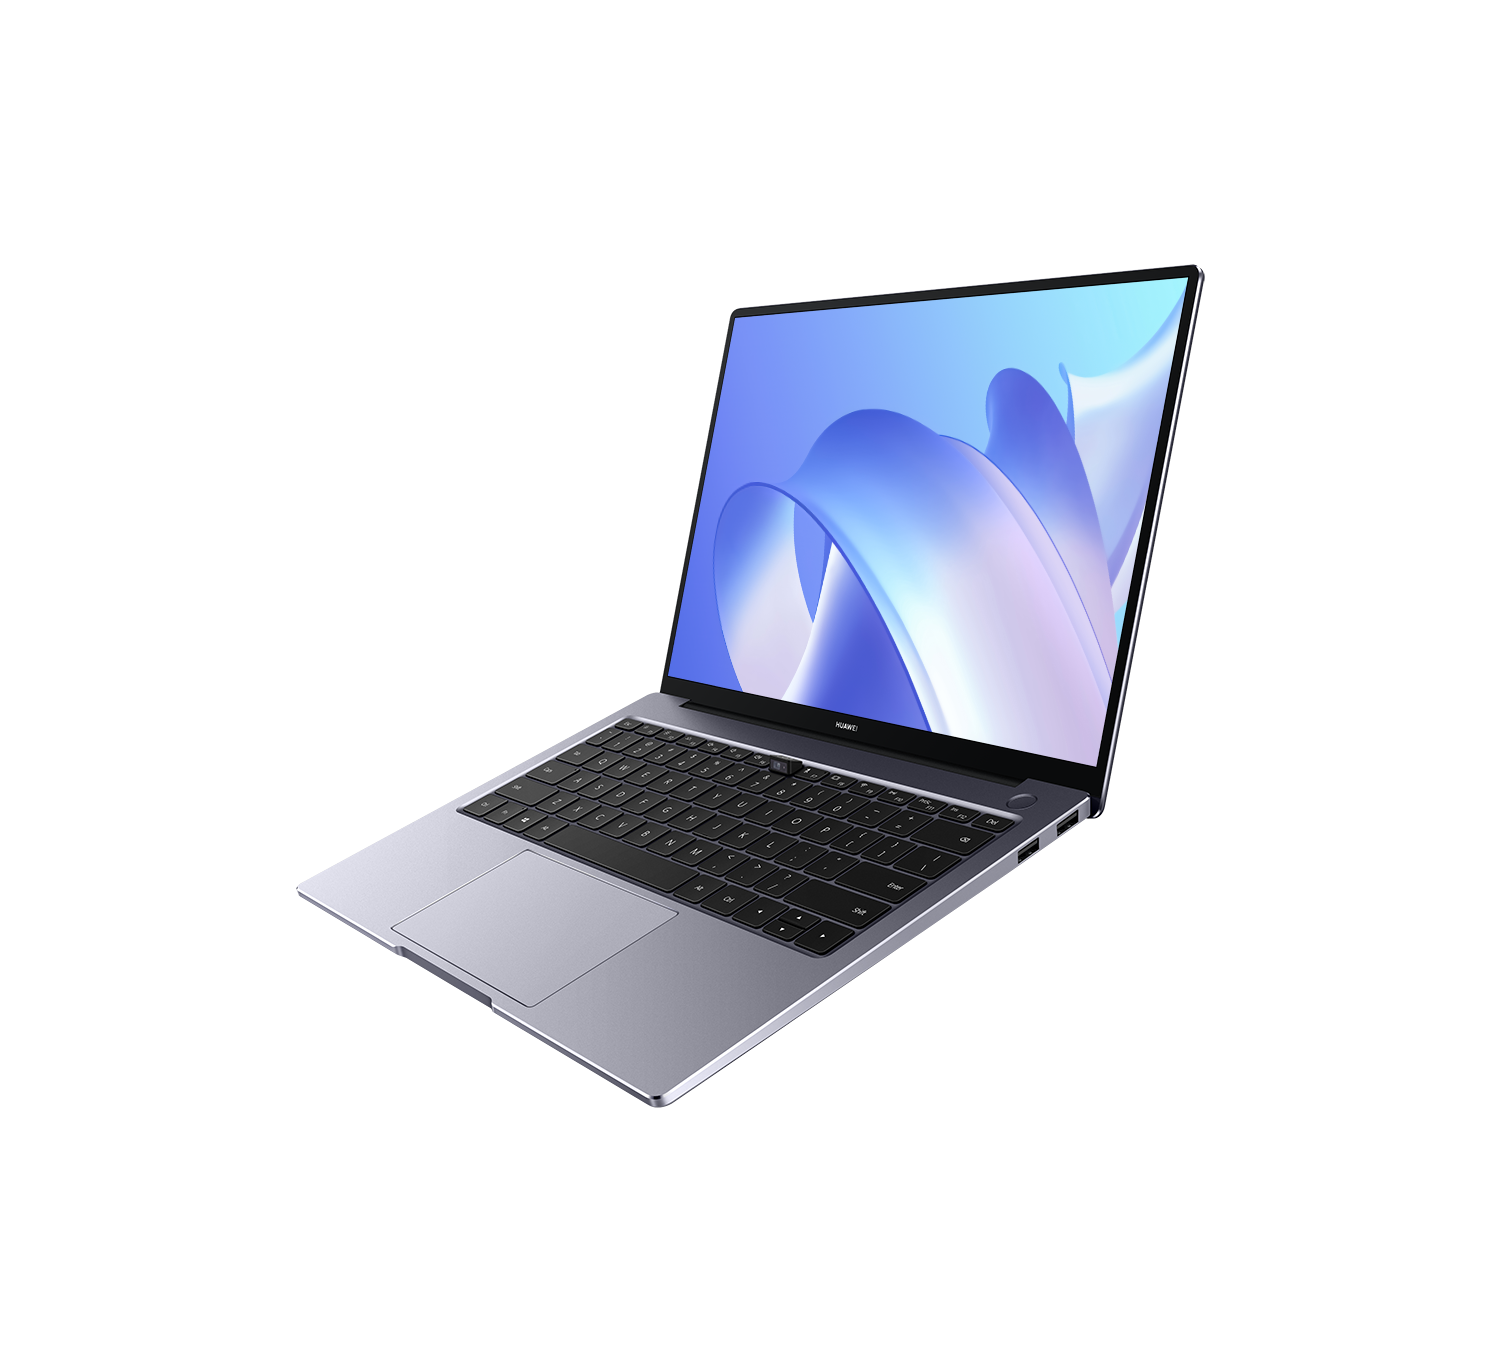 Máy Tính Xách Tay HUAWEI MateBook 14 (8GB/512GB) | Intel Core Thế Hệ Thứ 11 | Màn Hình HUAWEI 3:2 Fullview 2k | Nút Nguồn Vân Tay | Hàng Chính Hãng